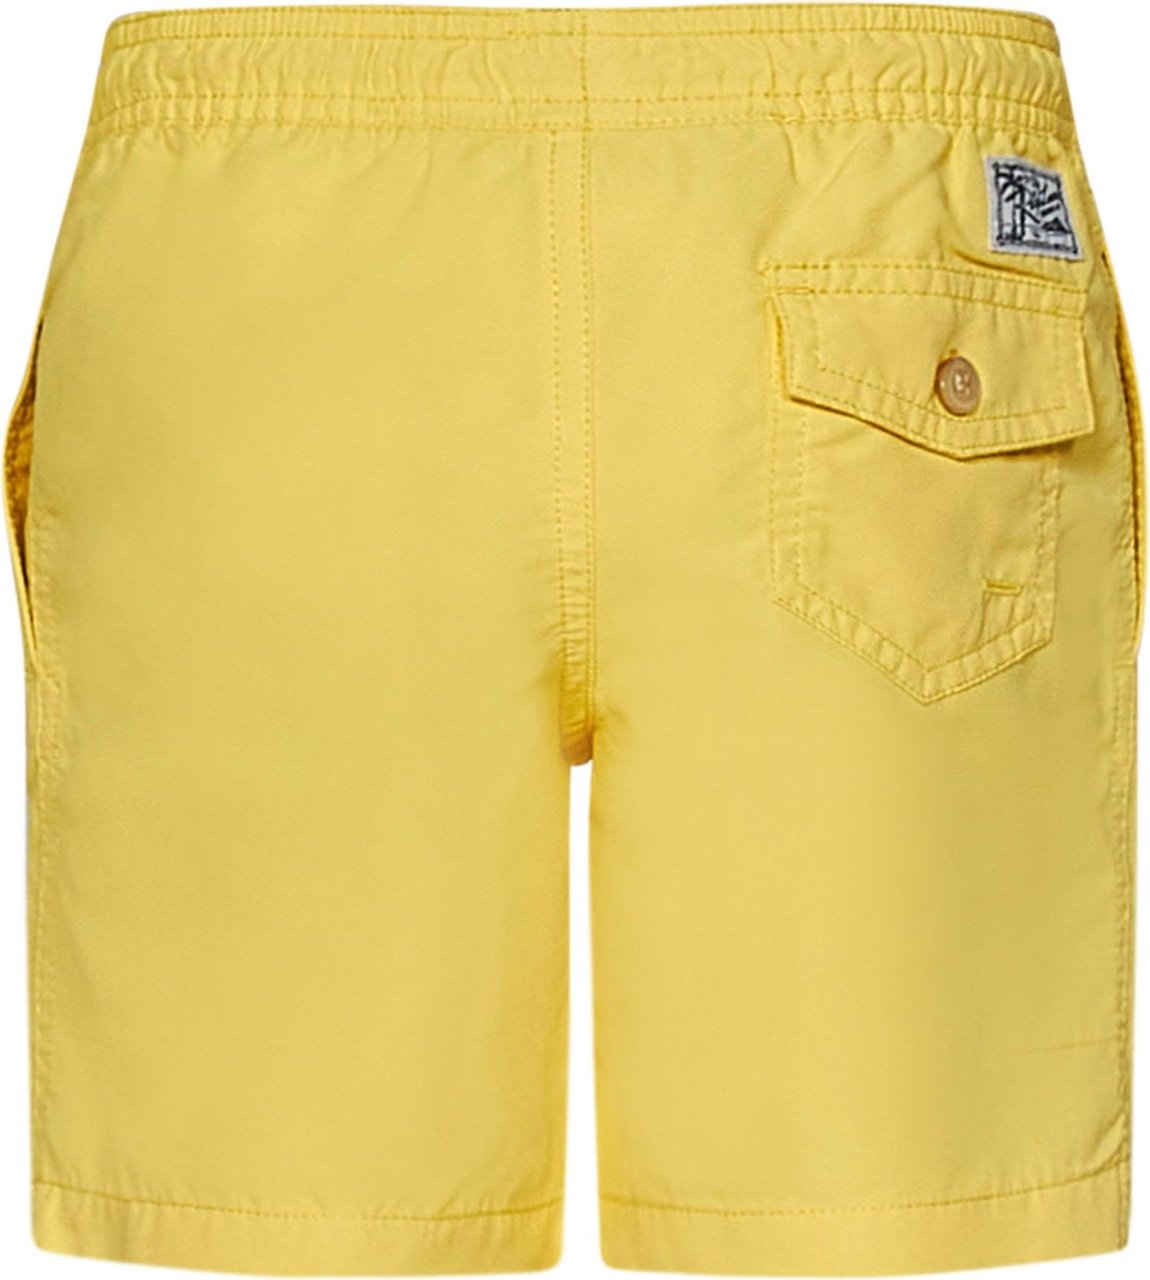 Ralph Lauren Polo Ralph Lauren Sea clothing Yellow Geel